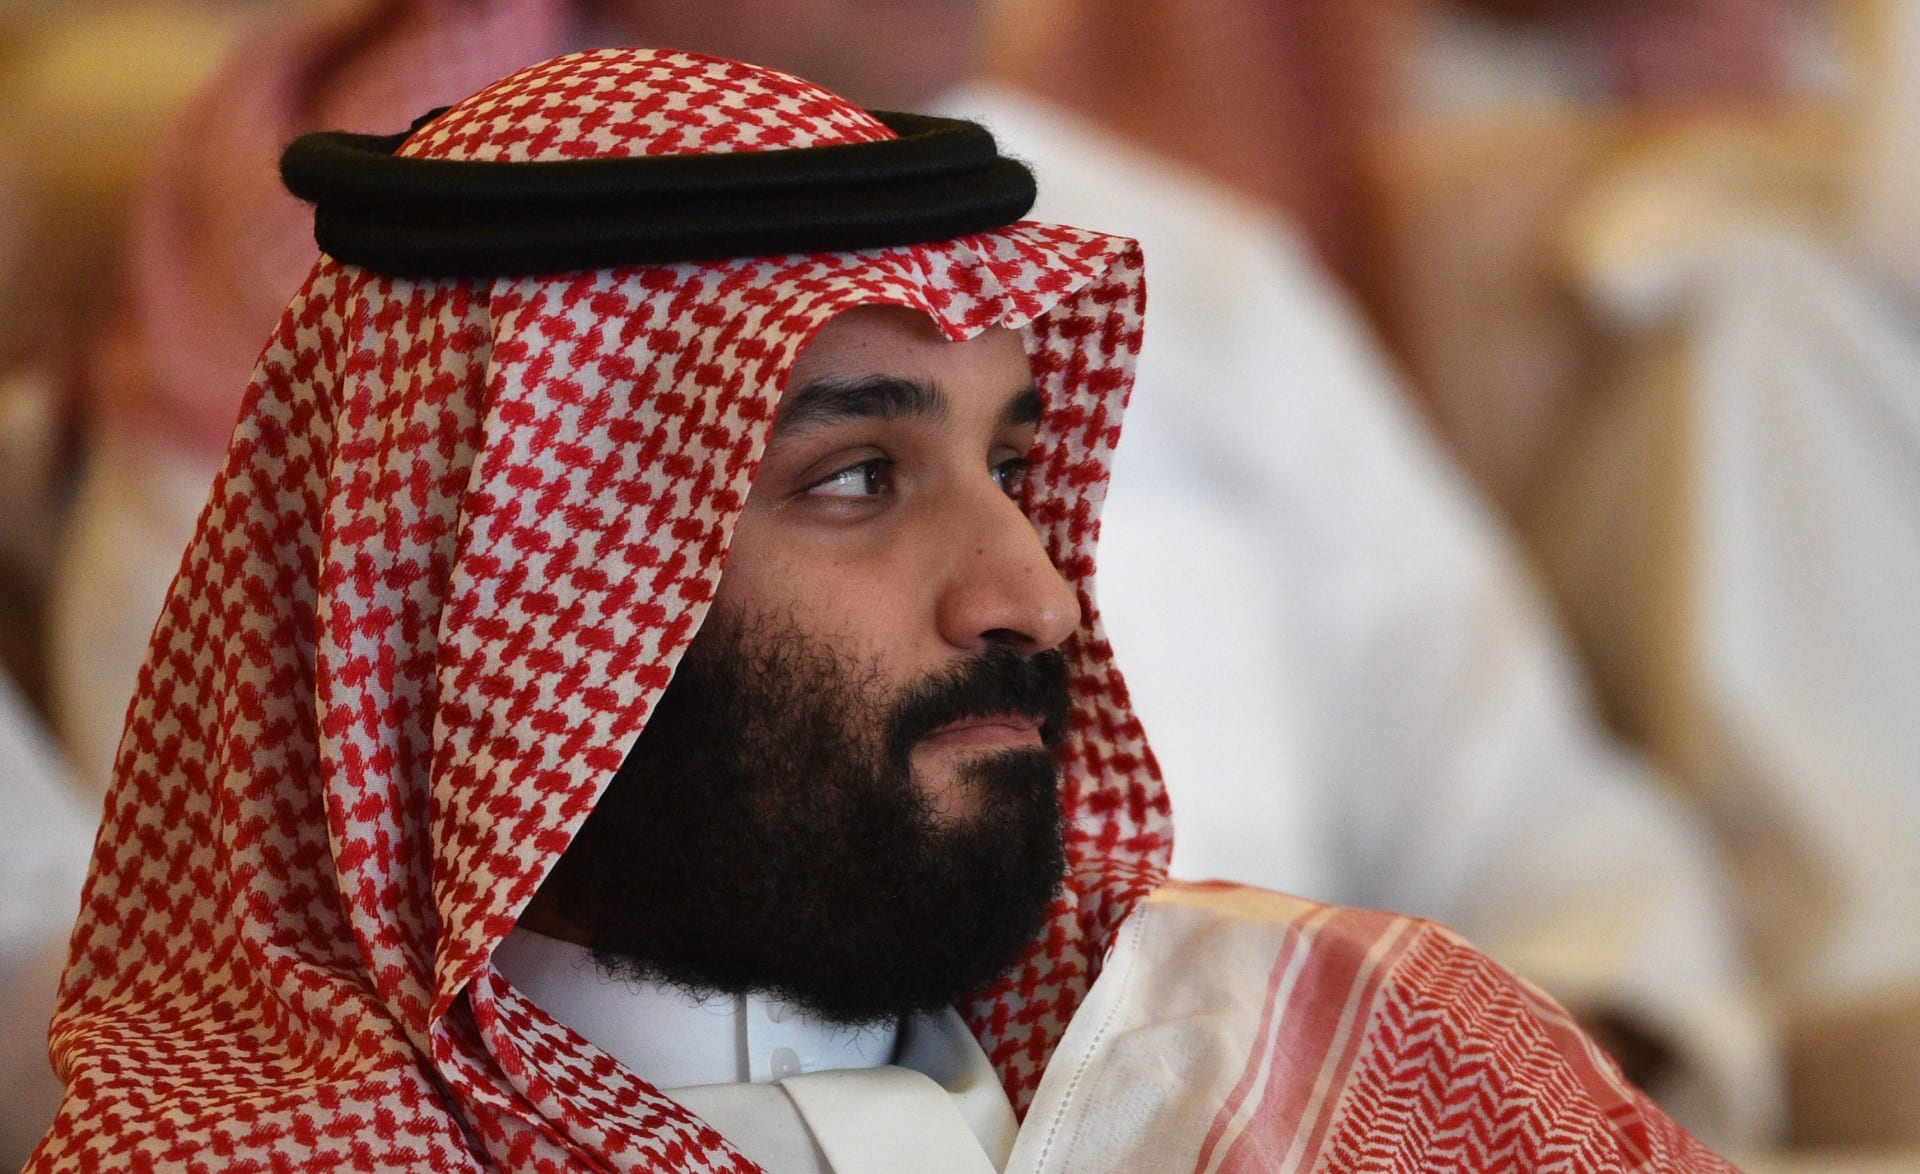 أمير سعودي يغرد عن مدى تأثير "كارهي" محمد بن سلمان على قرارات ولي العهد